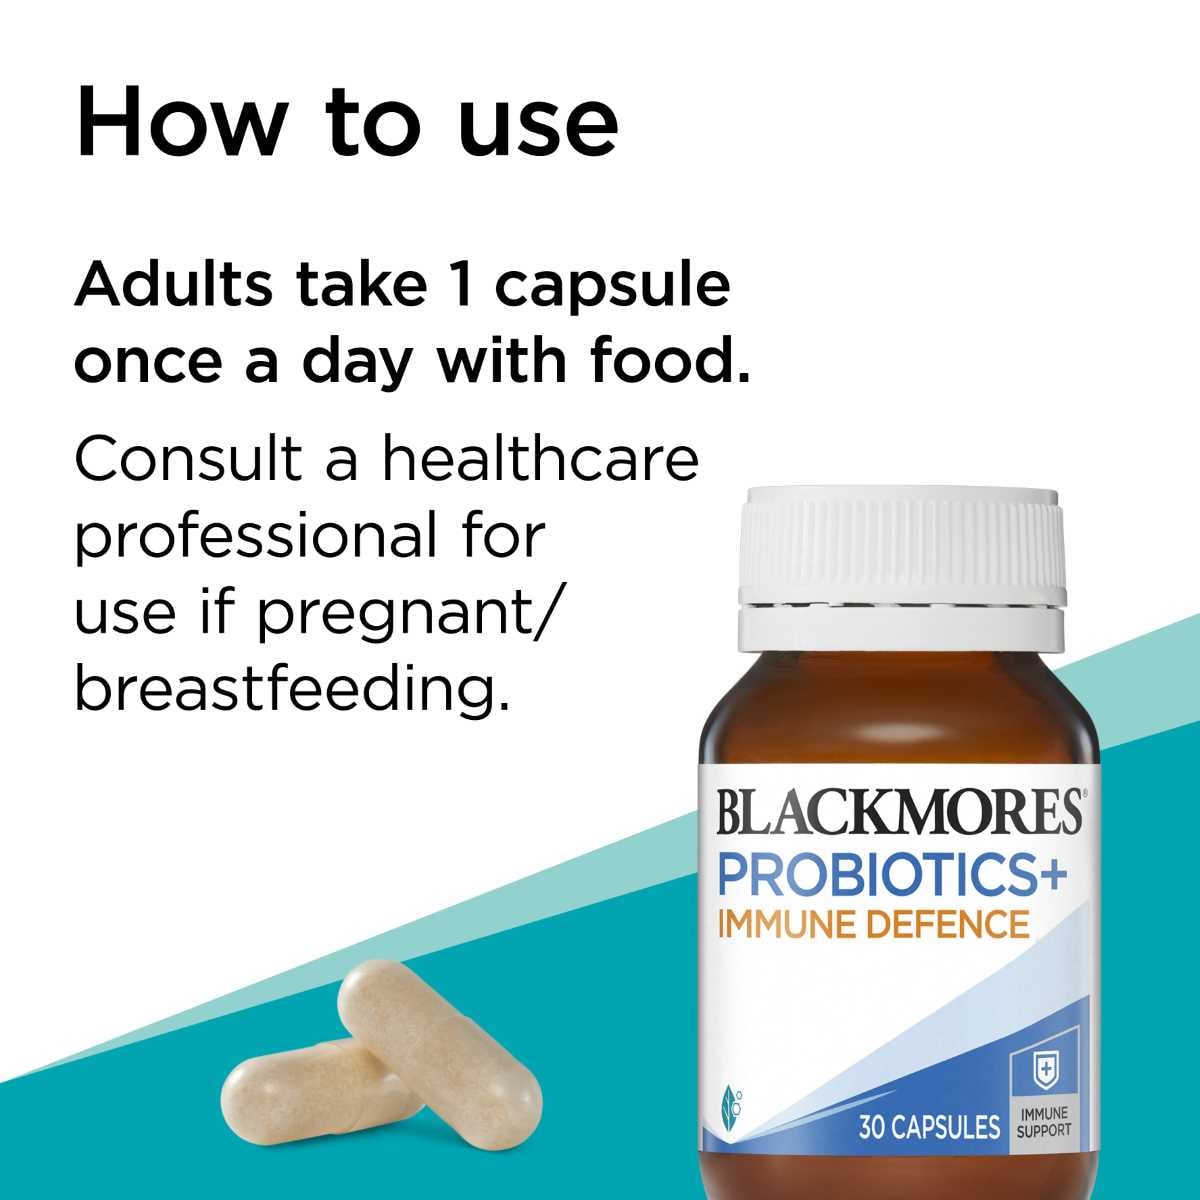 Blackmores Probiotics + Immune Defence 30 Capsules